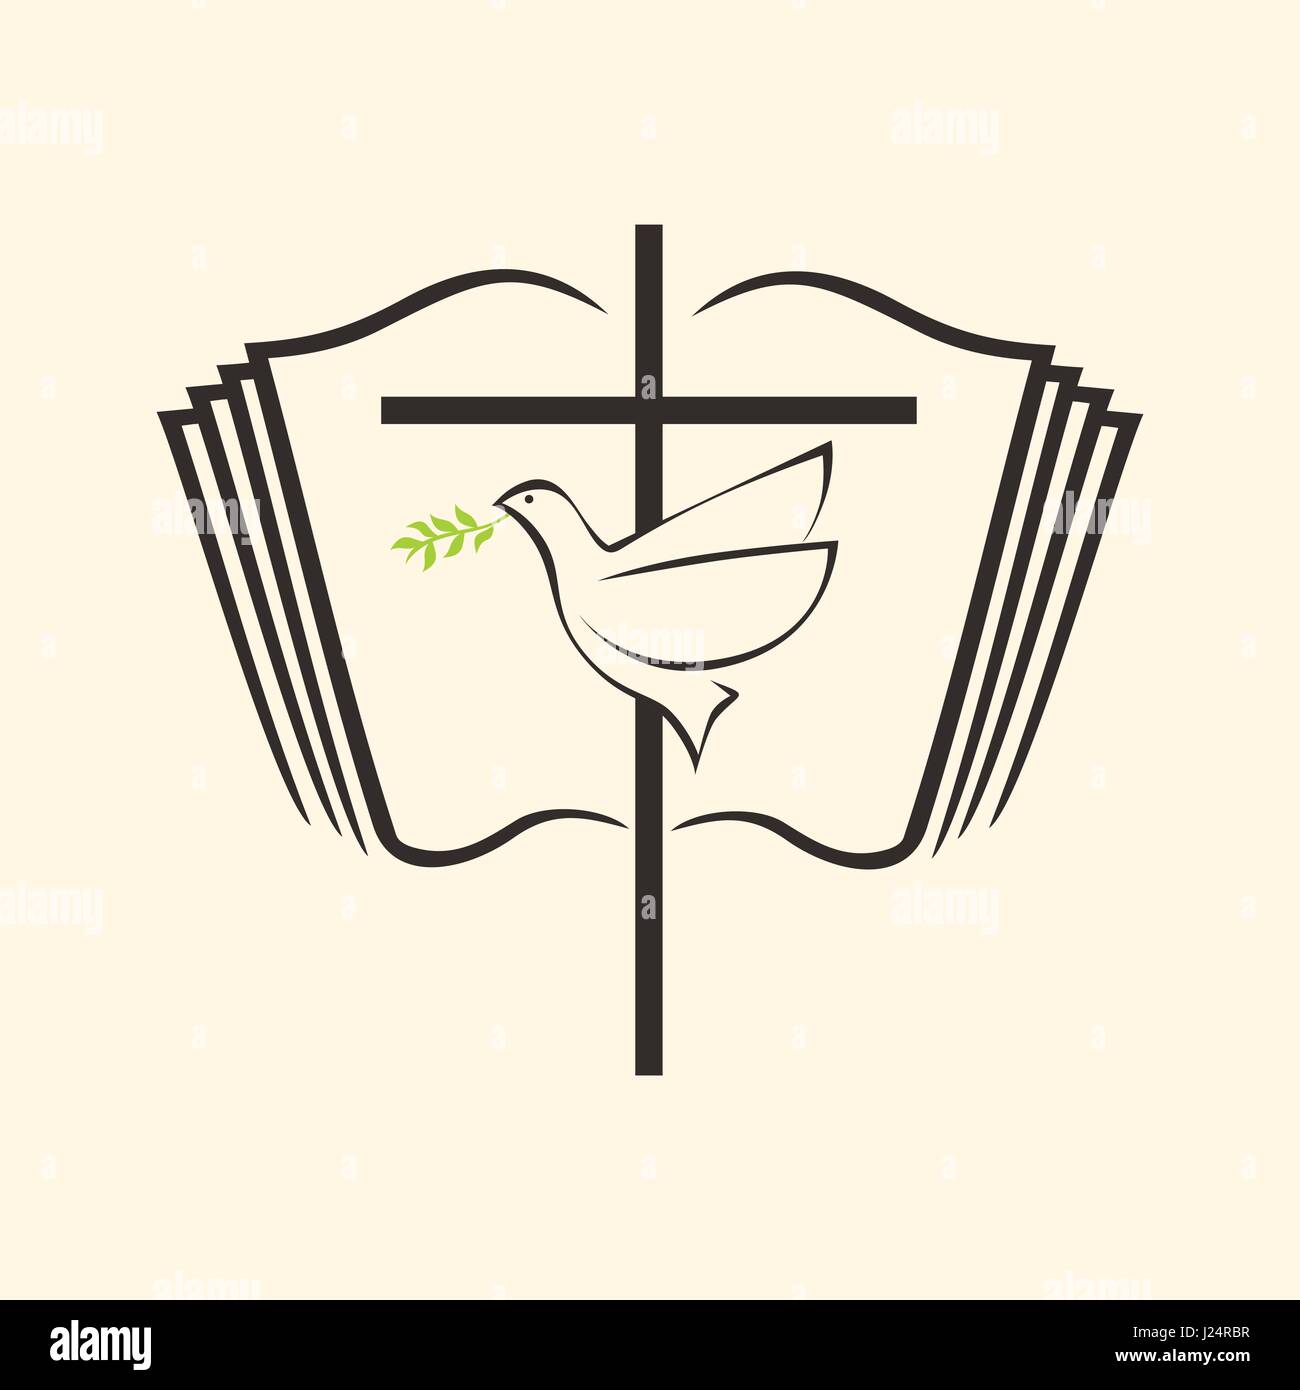 Christliche Print. Bibel-Symbole. Das Kreuz des Herrn Jesus Christus, eine aufgeschlagene Bibel und eine Taube mit einem Zweig Stock Vektor